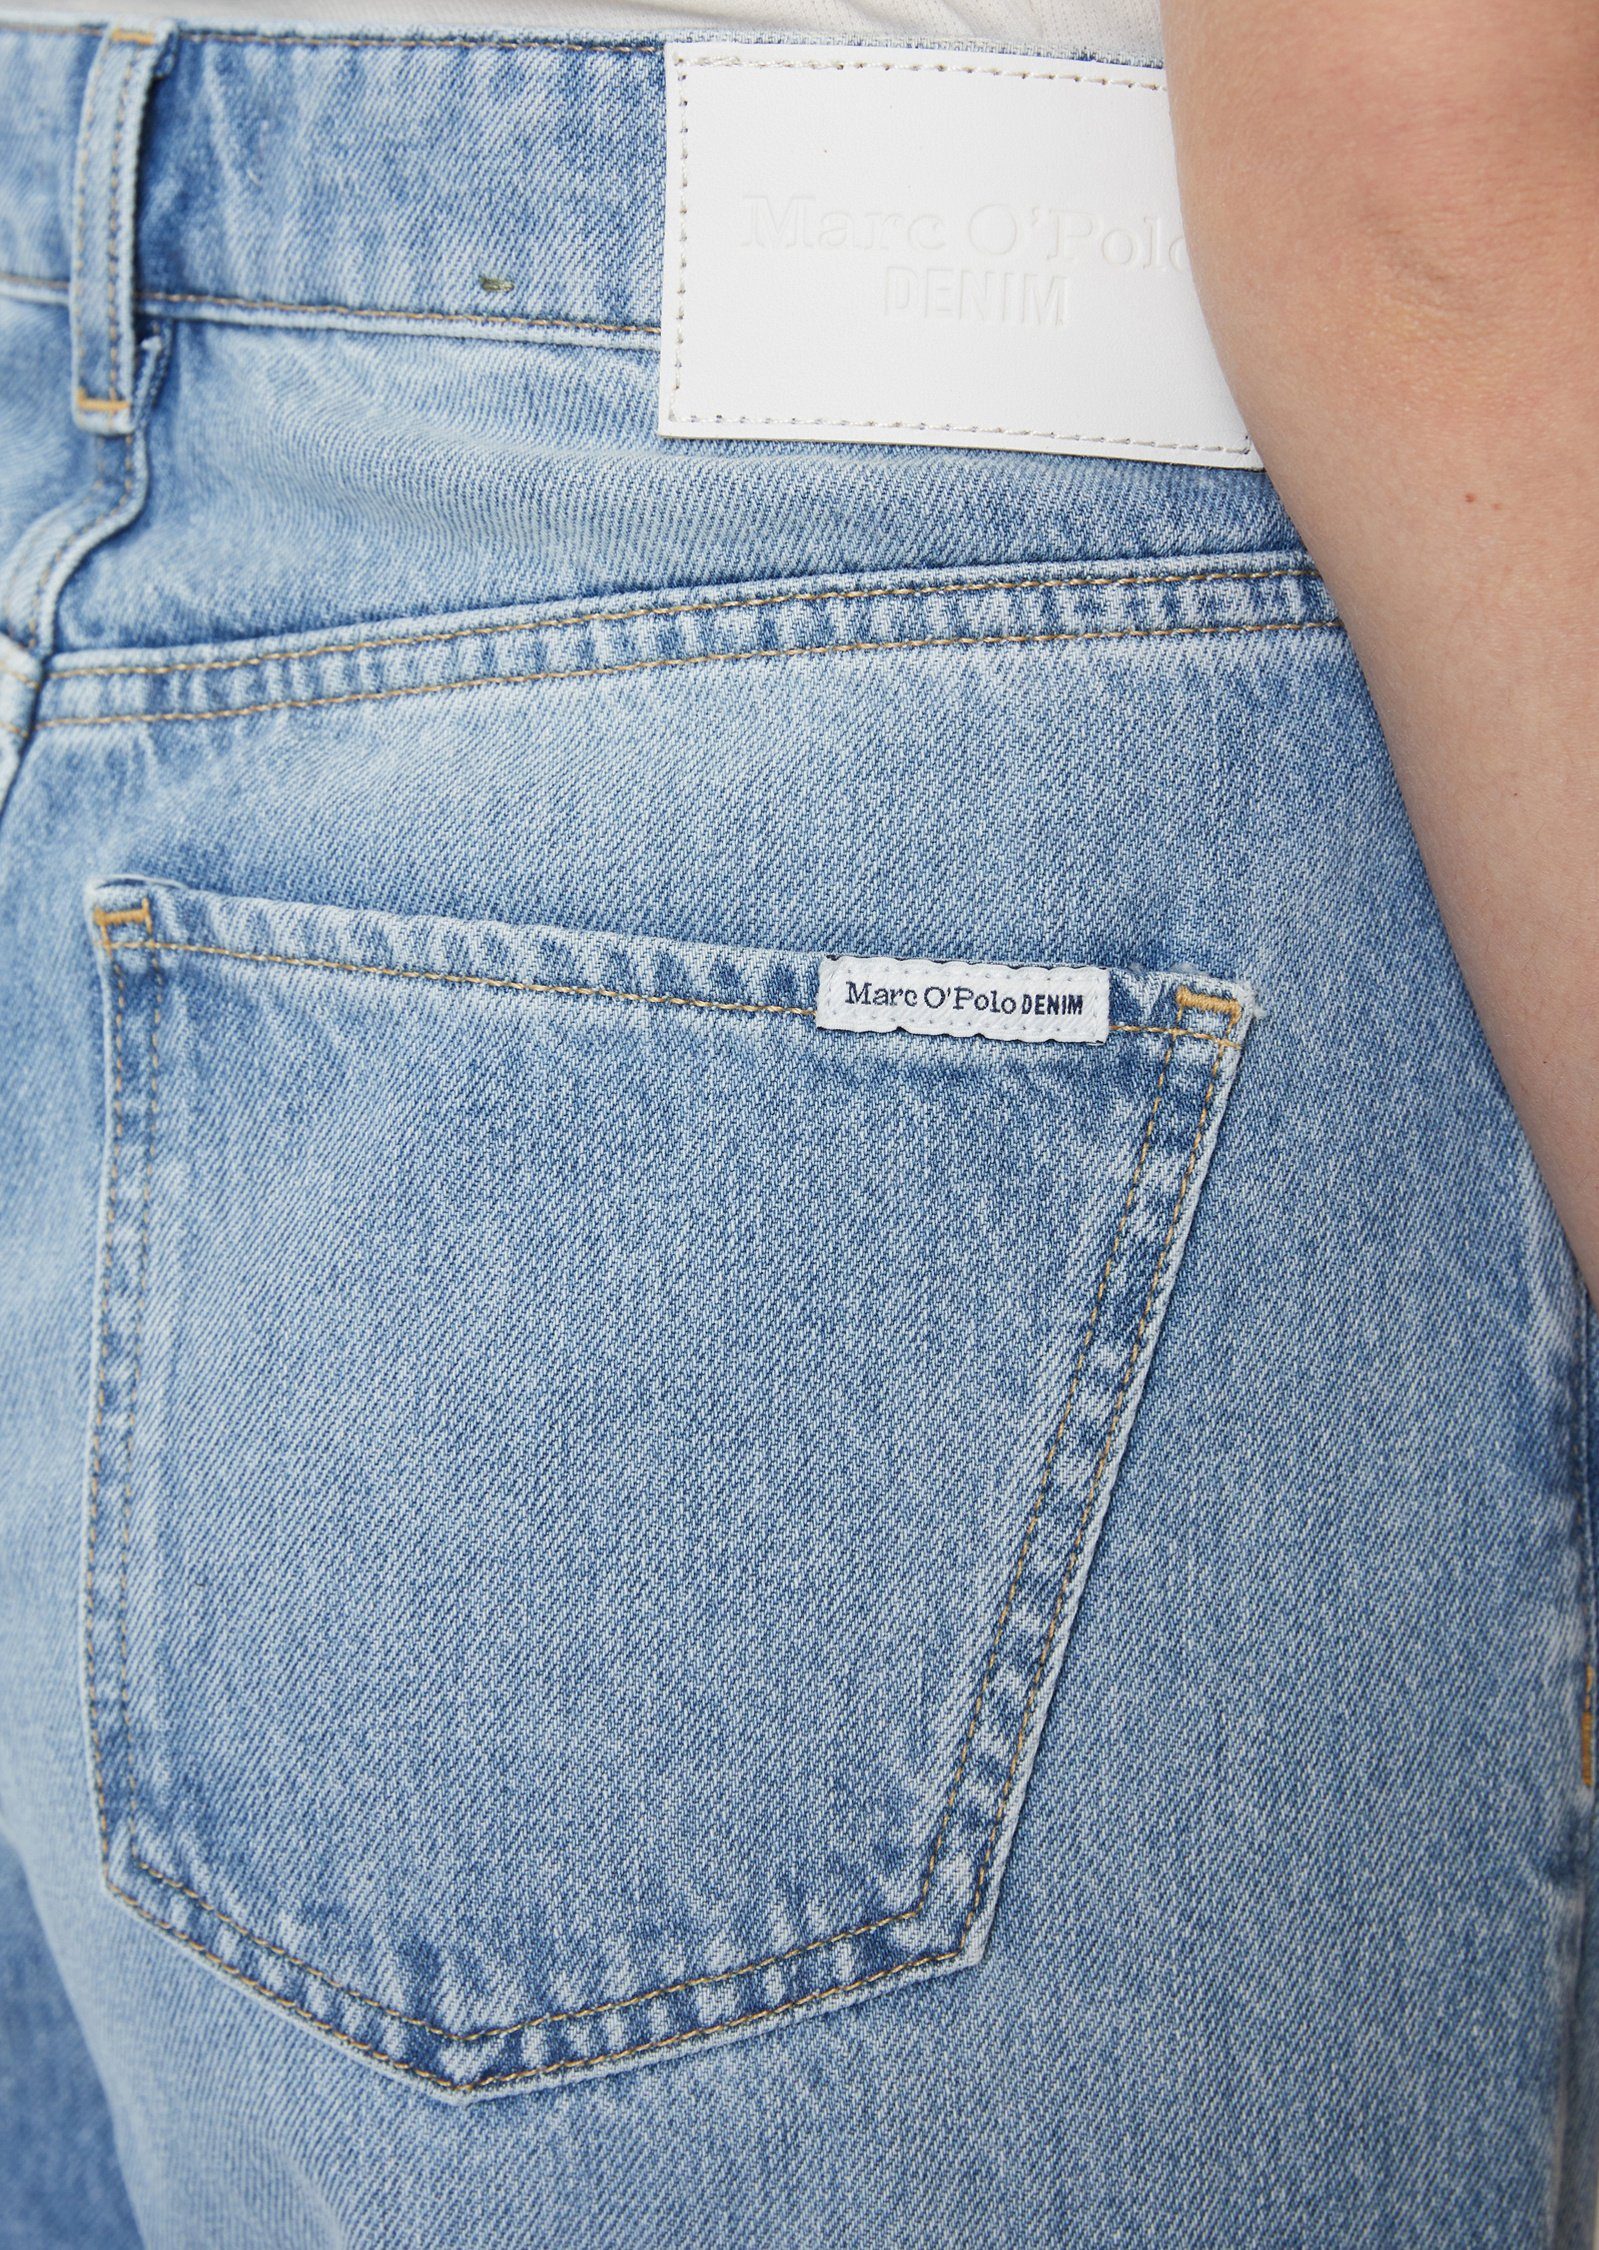 aus fließender DENIM Bio-Baumwolle leichter, O'Polo 5-Pocket-Jeans Marc